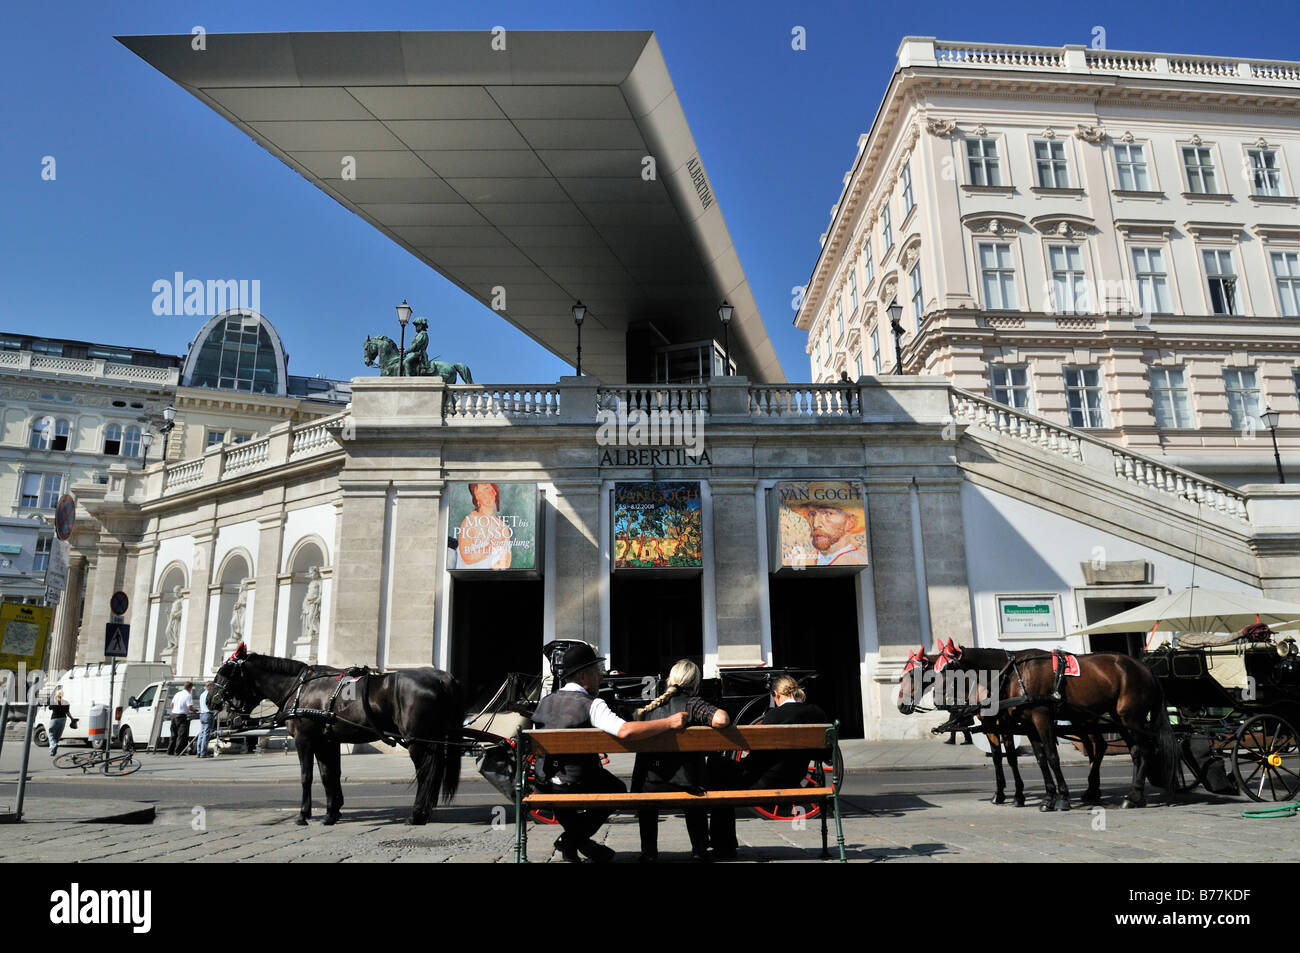 Buggy, à cheval, à l'extérieur de la Fiaker Albertina, Vienne, Autriche, Europe Banque D'Images